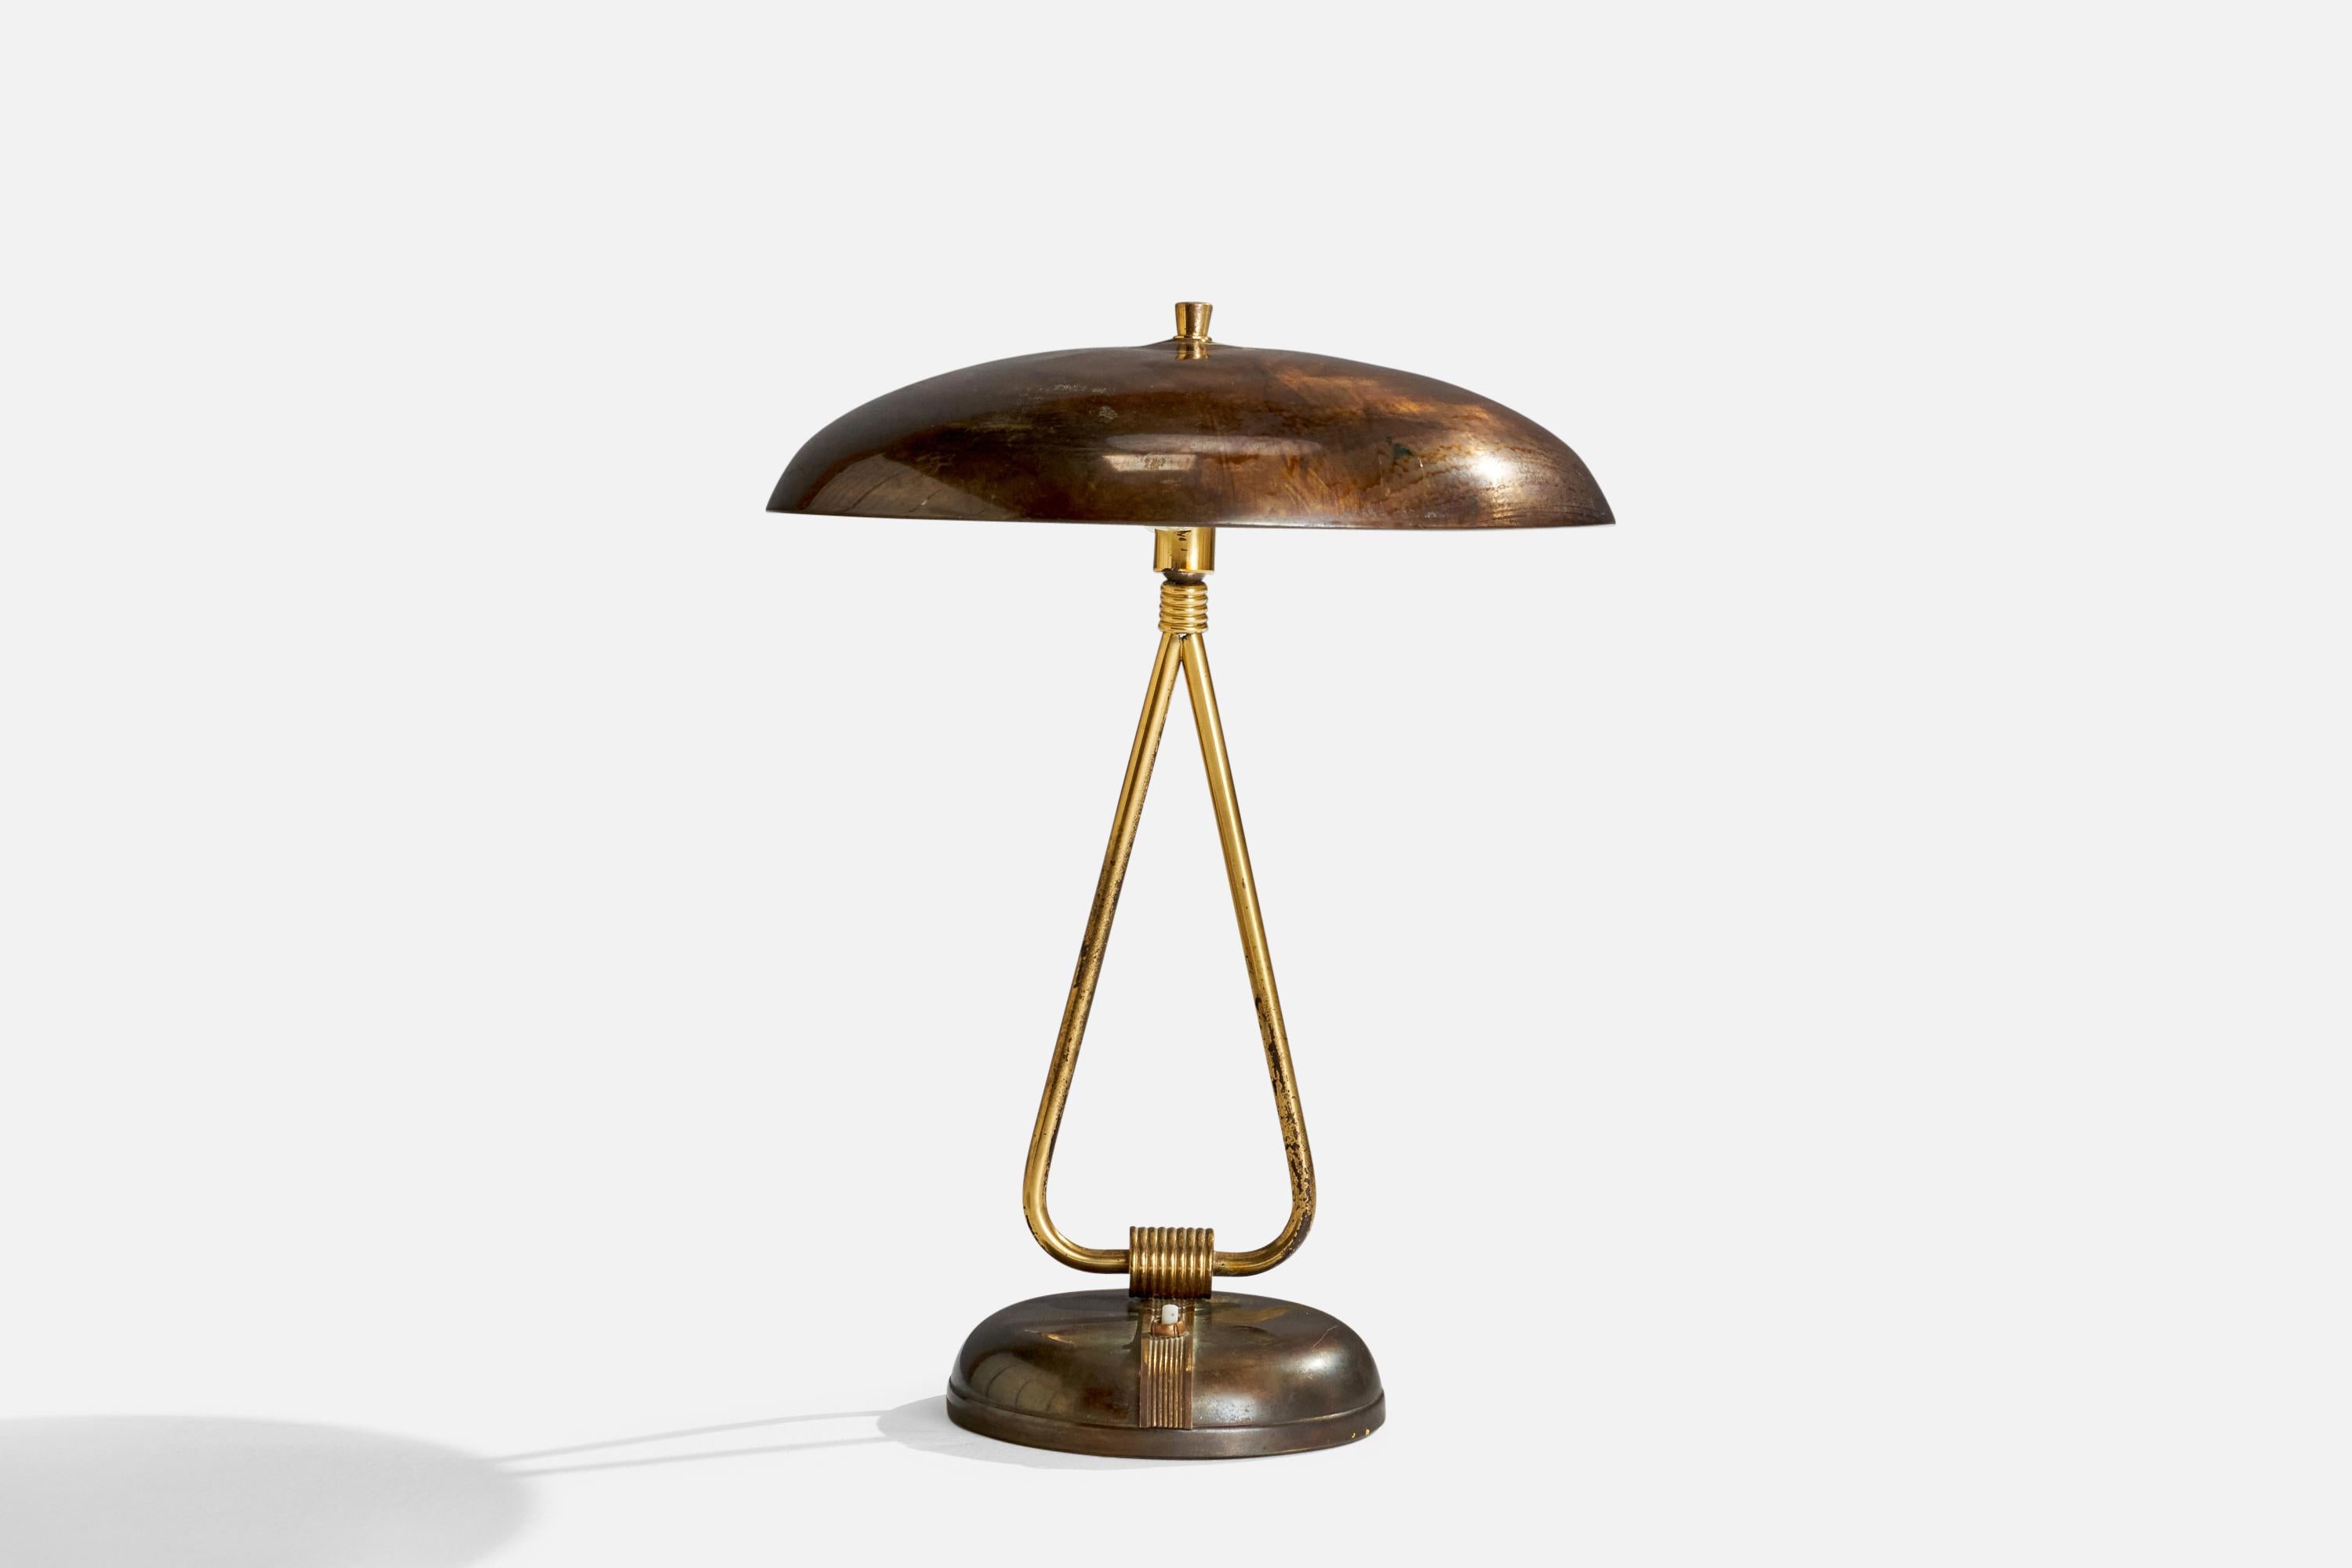 Eine verstellbare Tischlampe aus Messing, entworfen und hergestellt in Italien, 1940er Jahre.

Gesamtabmessungen (Zoll): 17